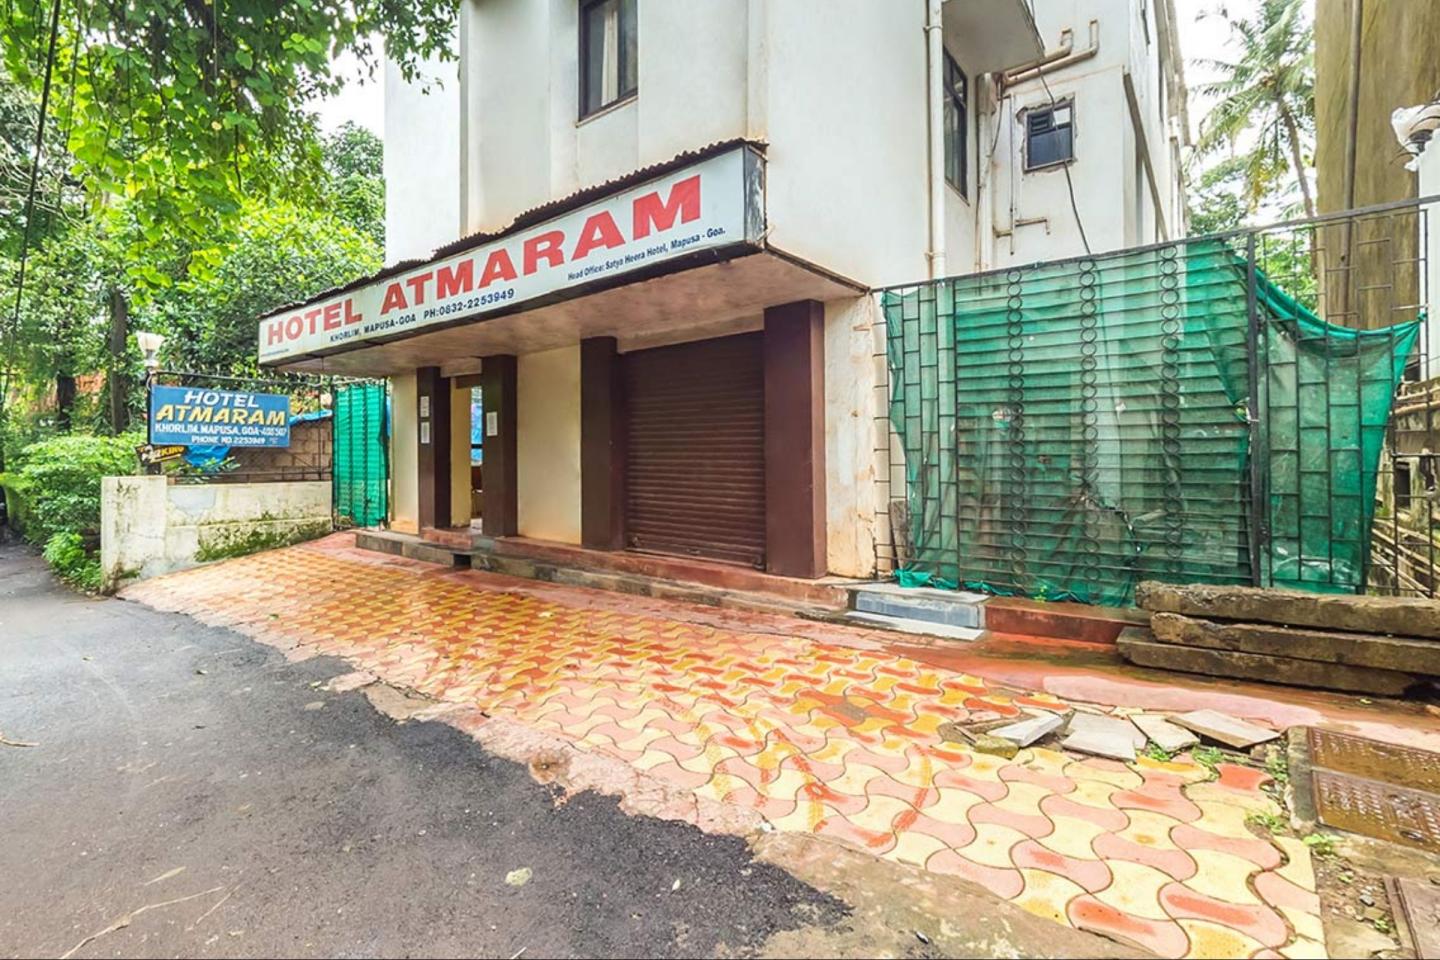 Atmaram Hotel Goa